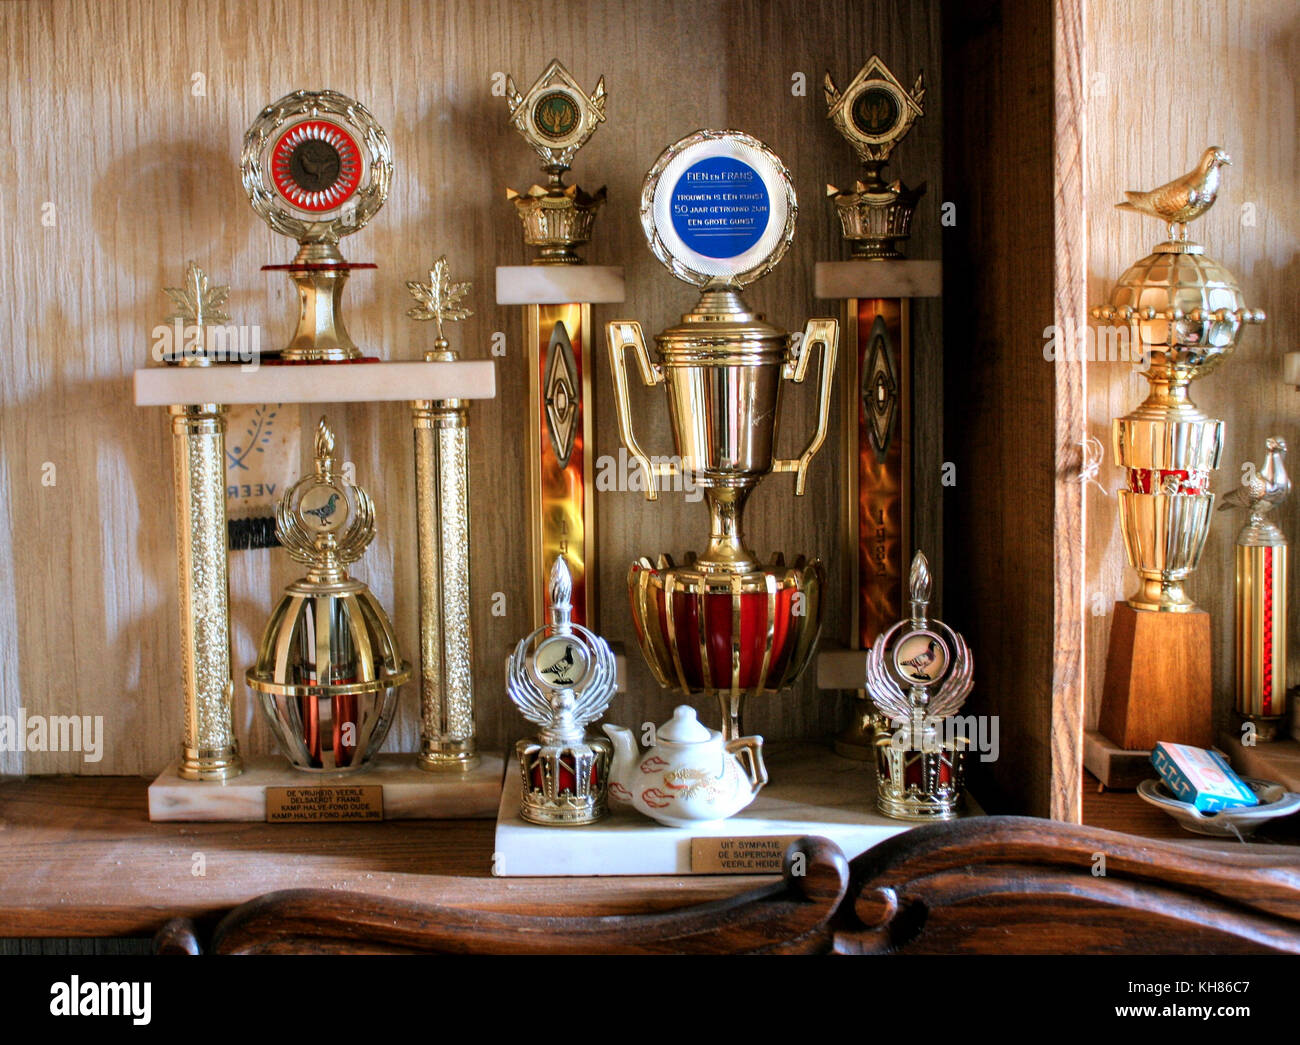 Belgio: HAUNTING immagini hanno rivelato una notevole collezione di trofei in una casa abbandonata che sembra come se essa è stata congelata nel tempo. La seri Foto Stock